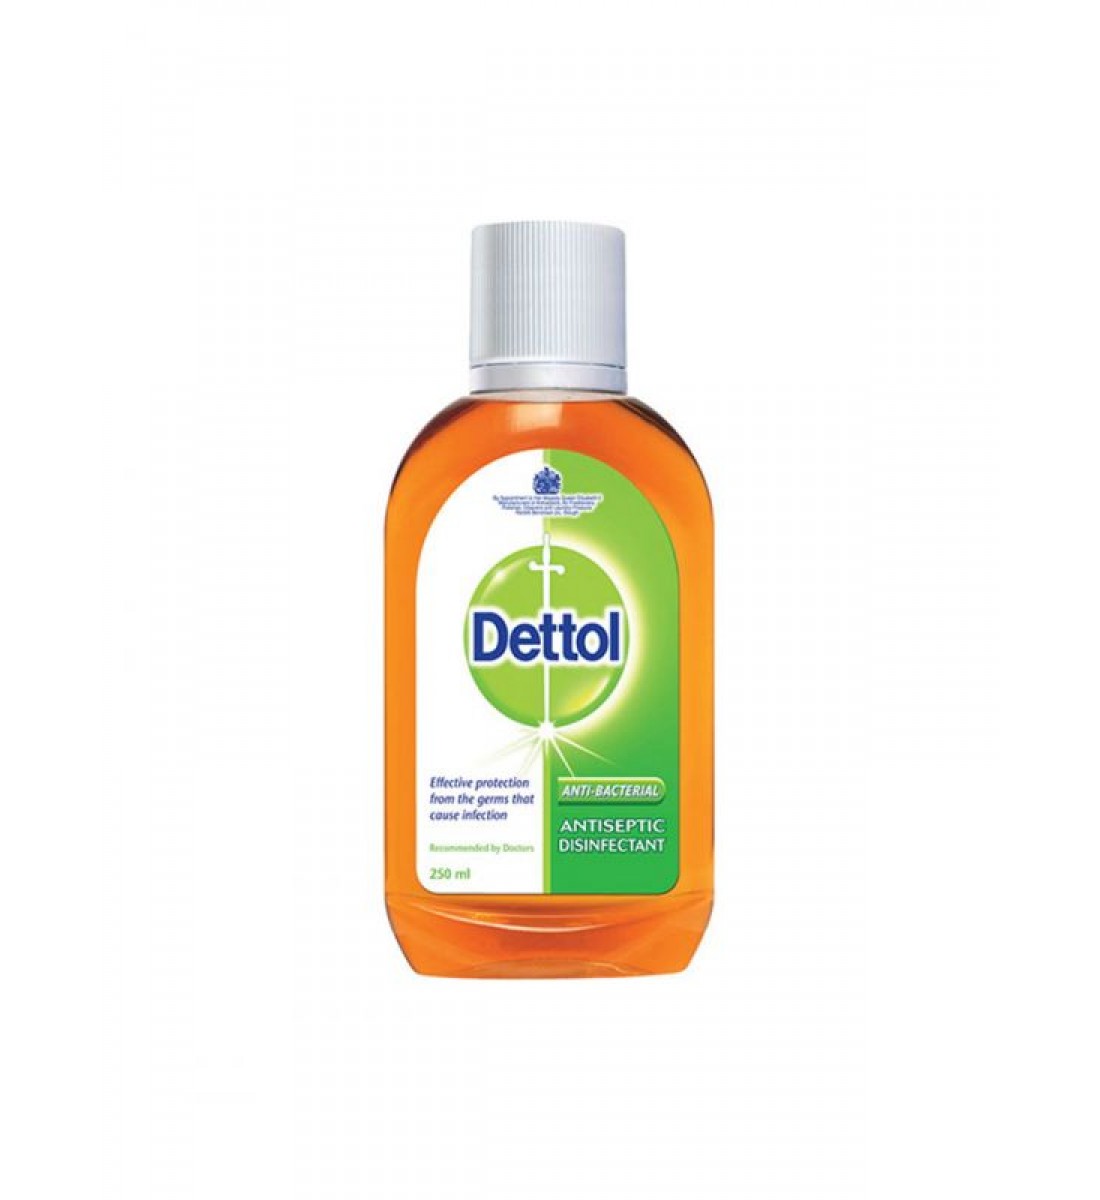 Dettol Original Liquid Antiseptic 125ml